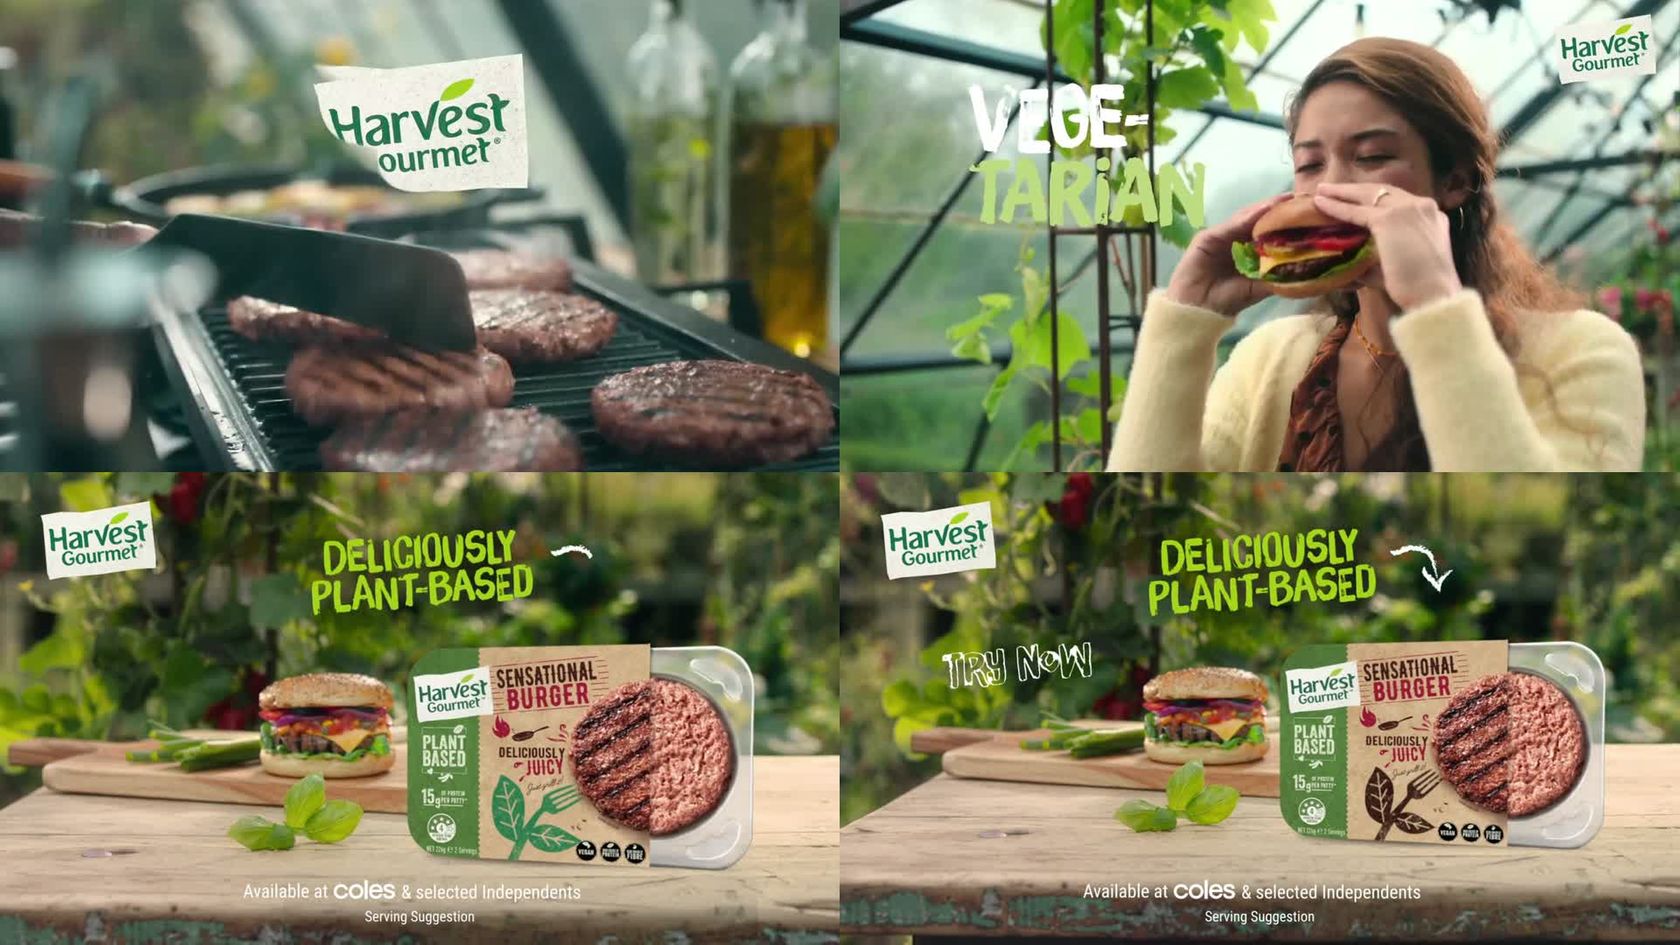 Gourmet harvest Nestlé Launches